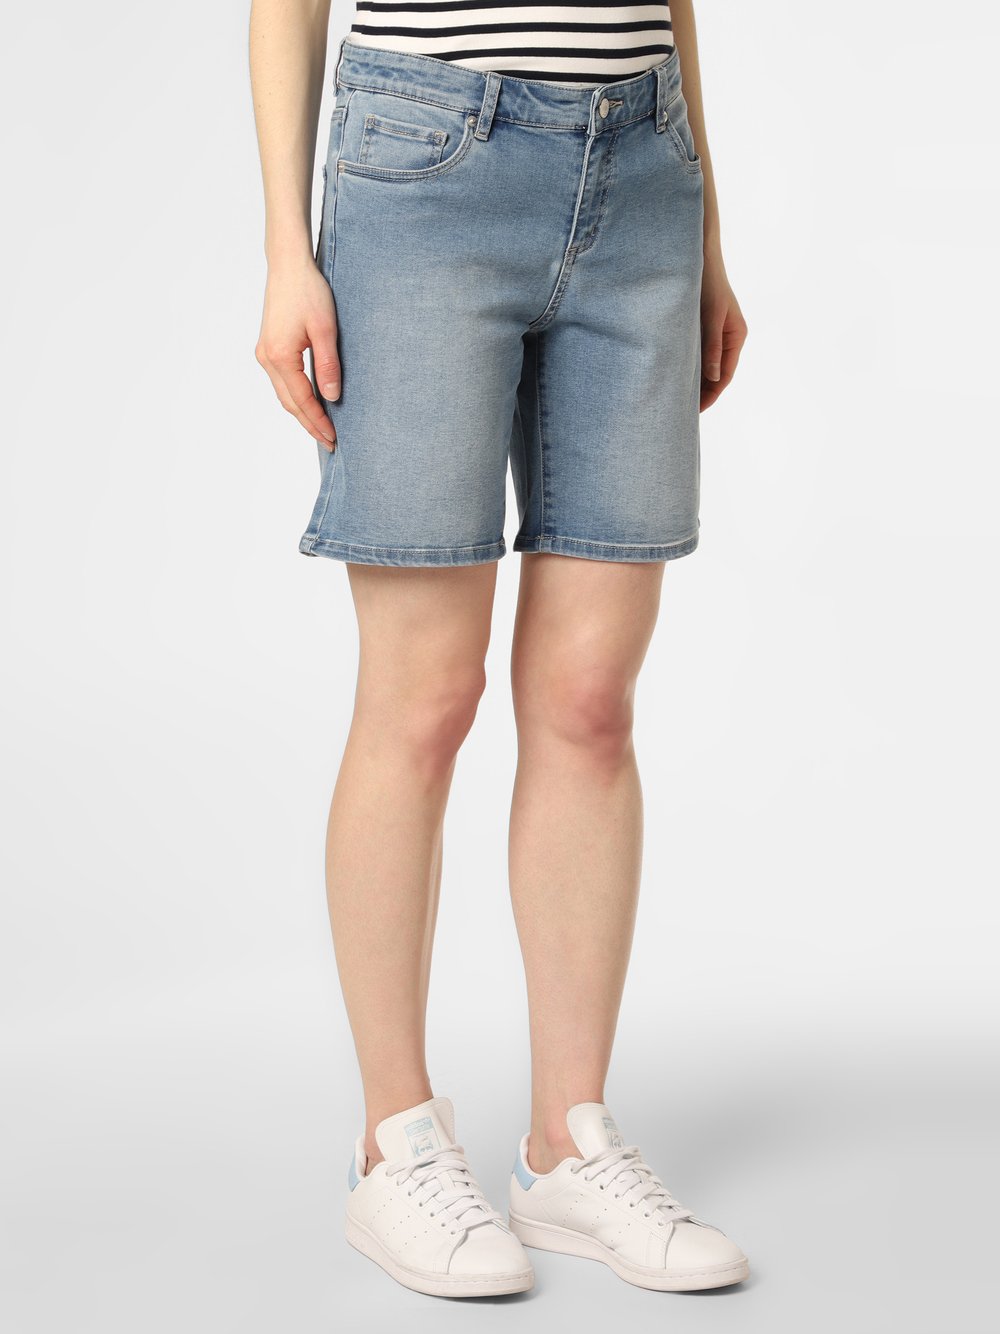 Marie Lund - Damskie krótkie spodenki jeansowe, niebieski